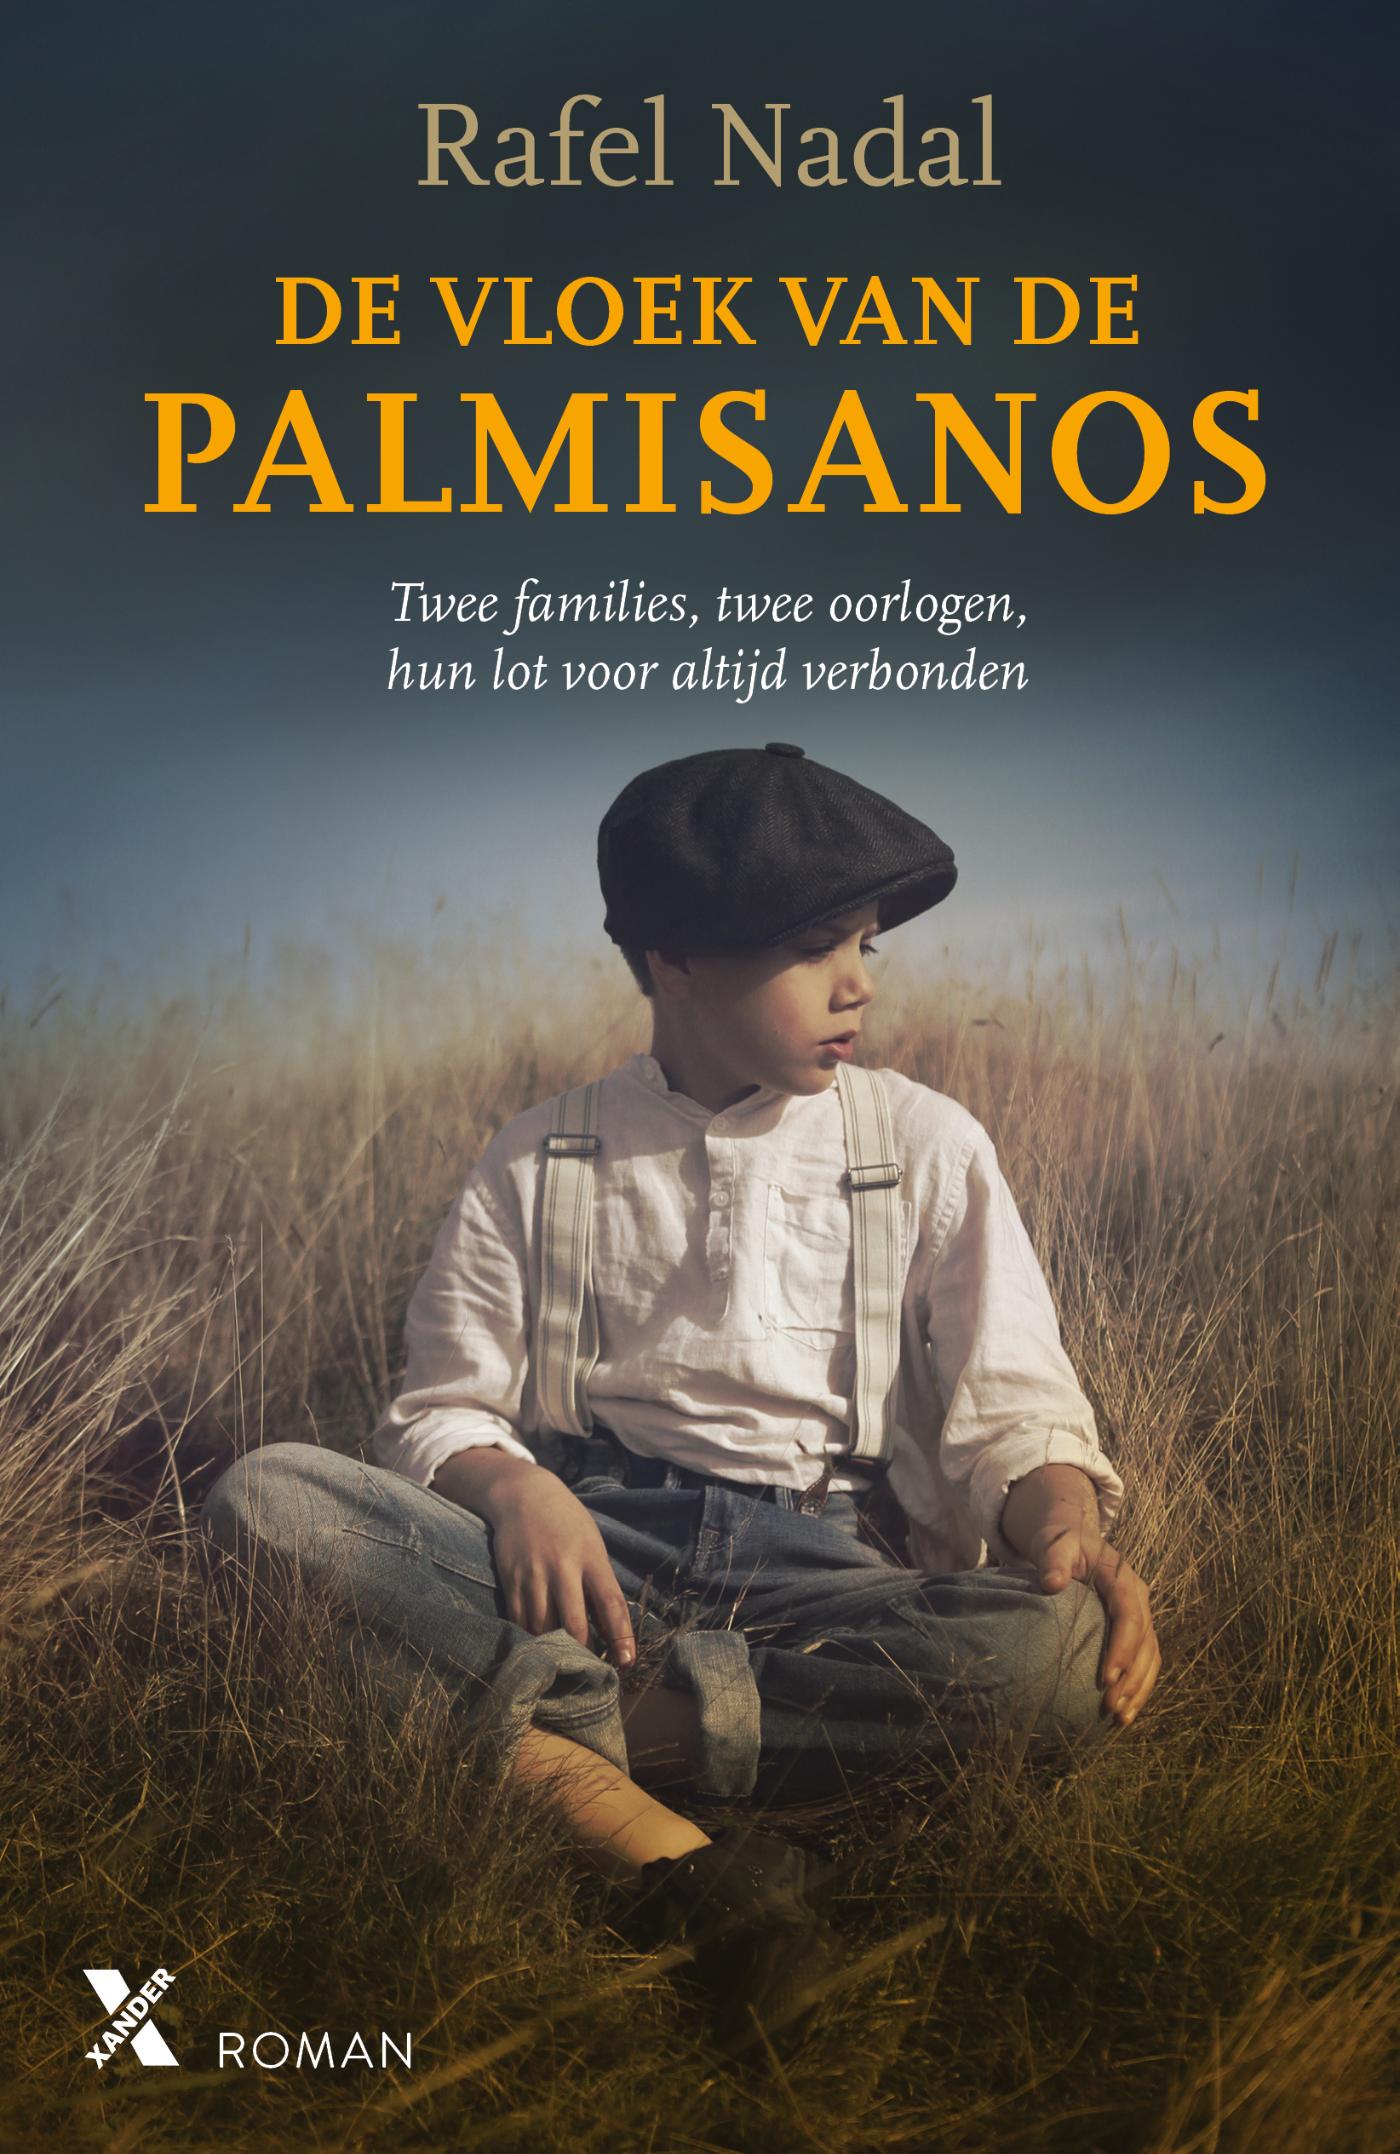 De vloek van de Palmisanos (Ebook)